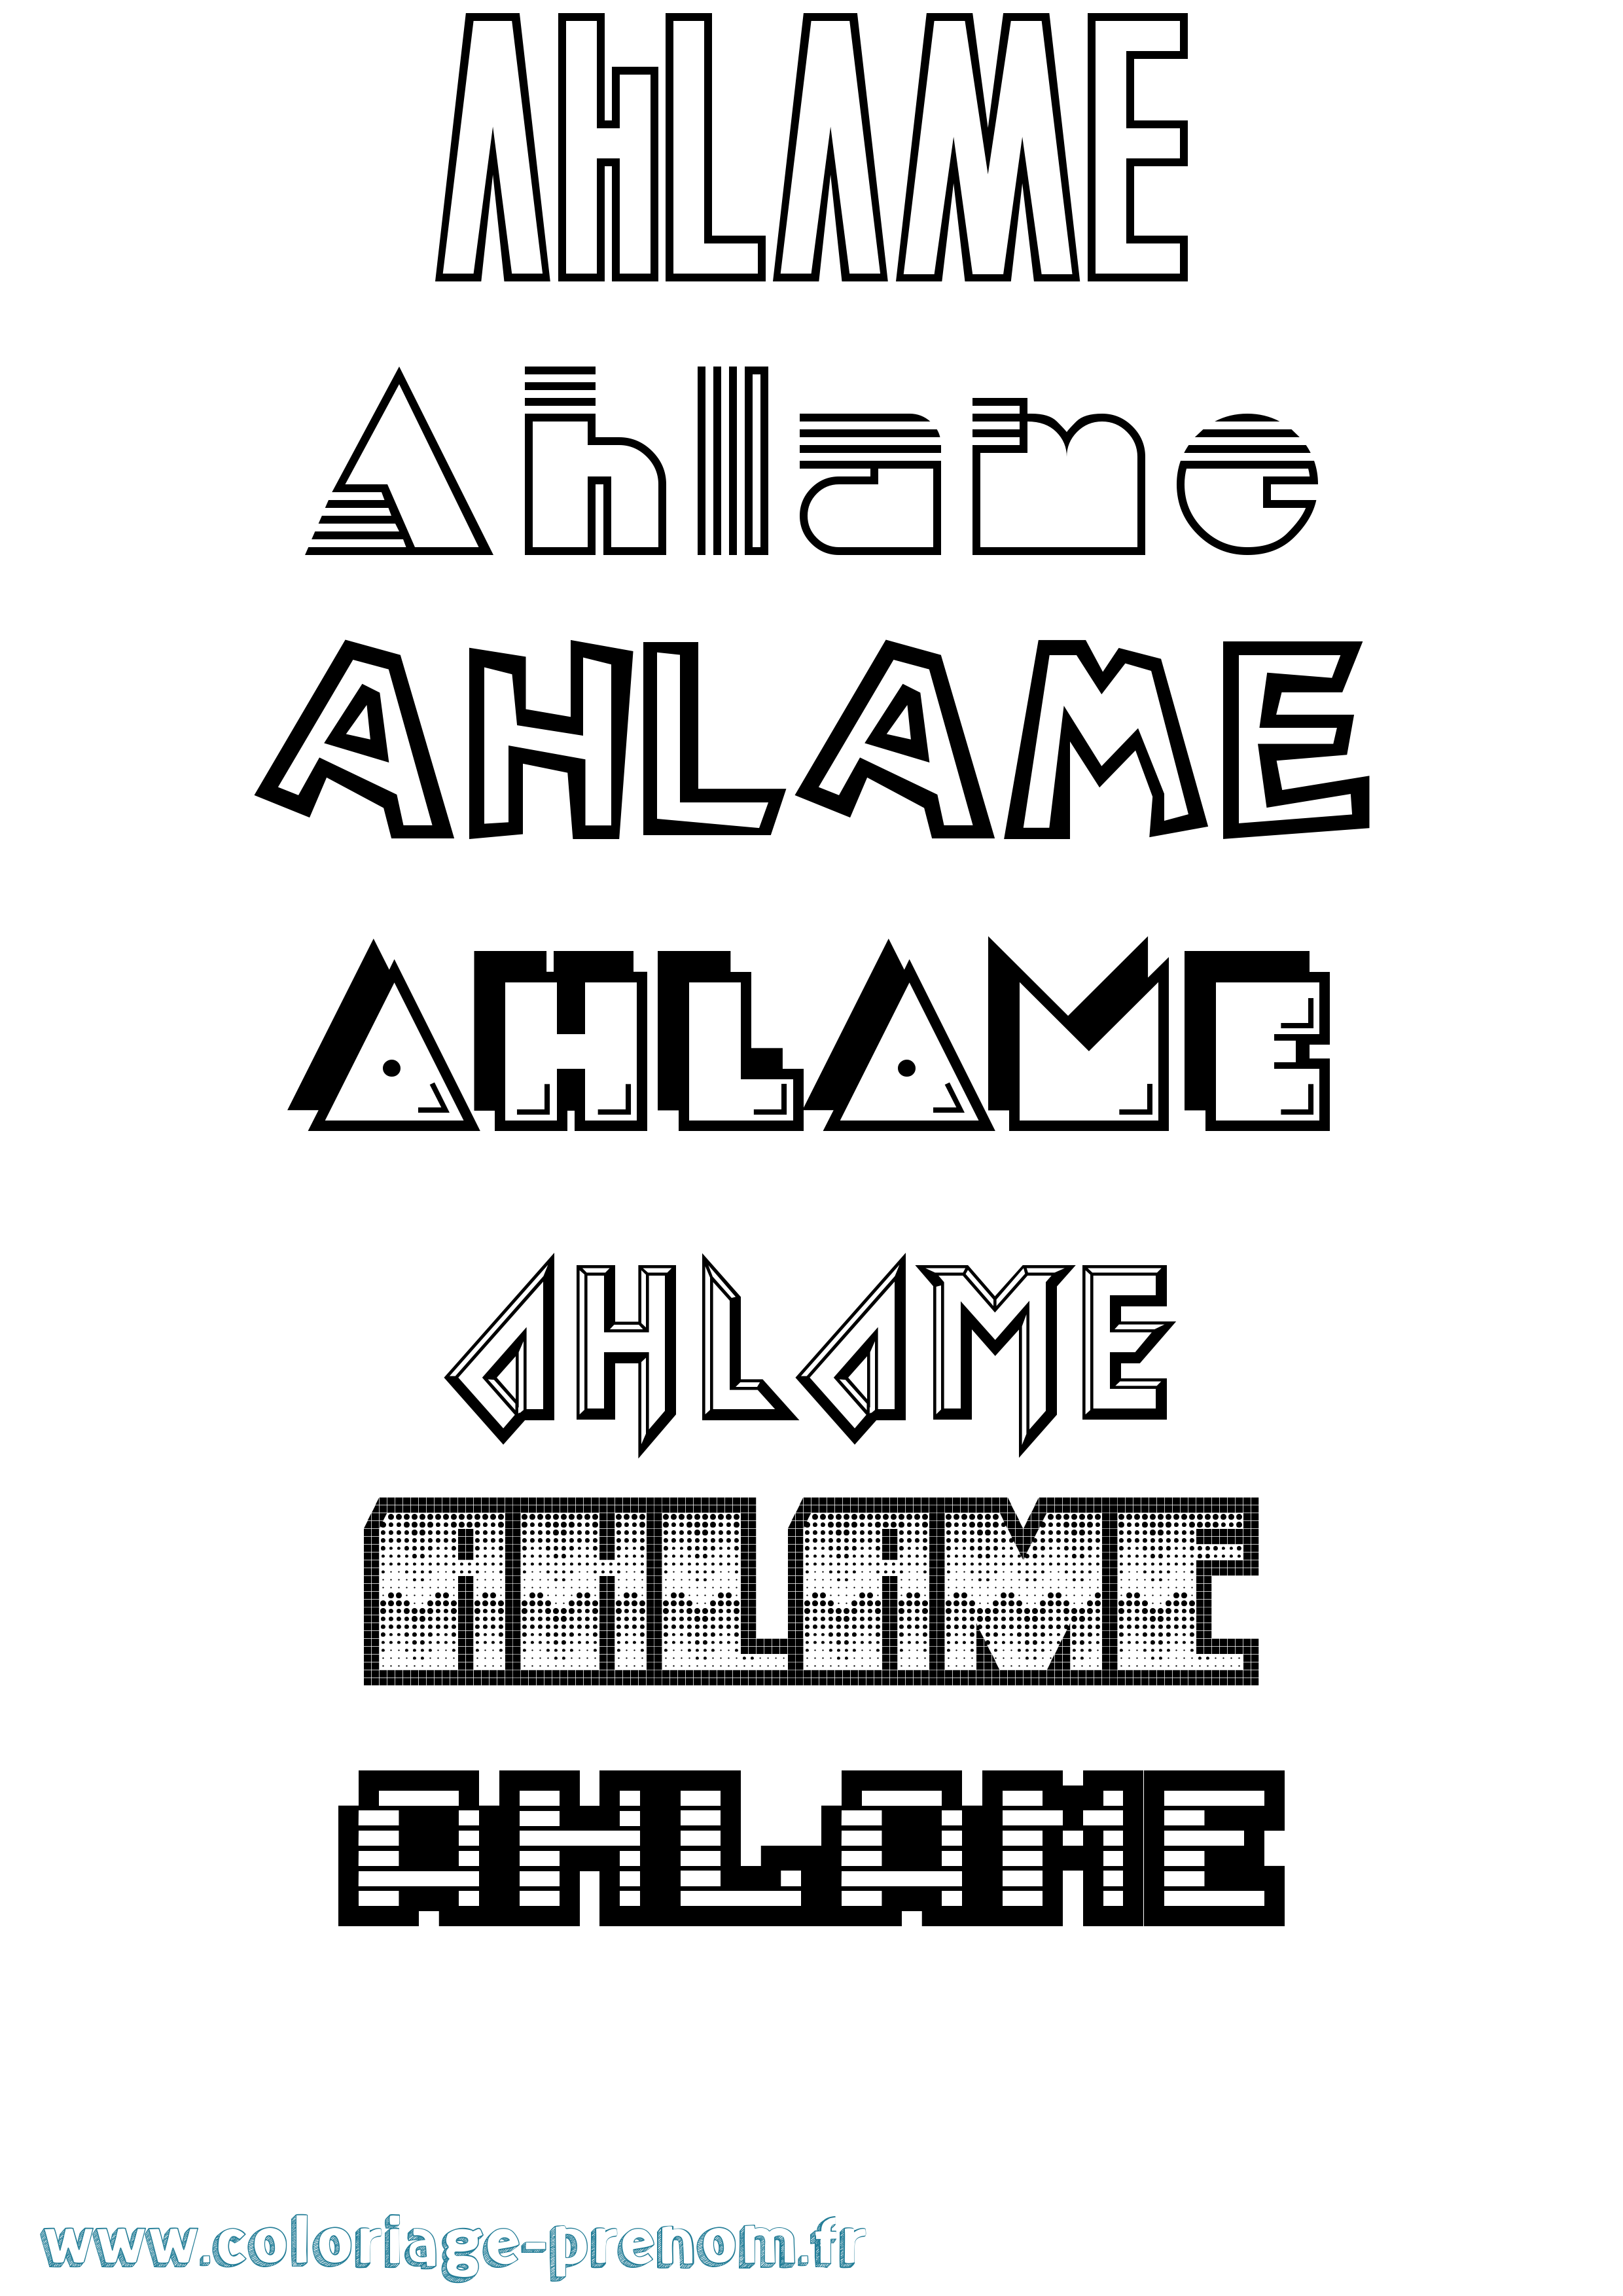 Coloriage prénom Ahlame Jeux Vidéos